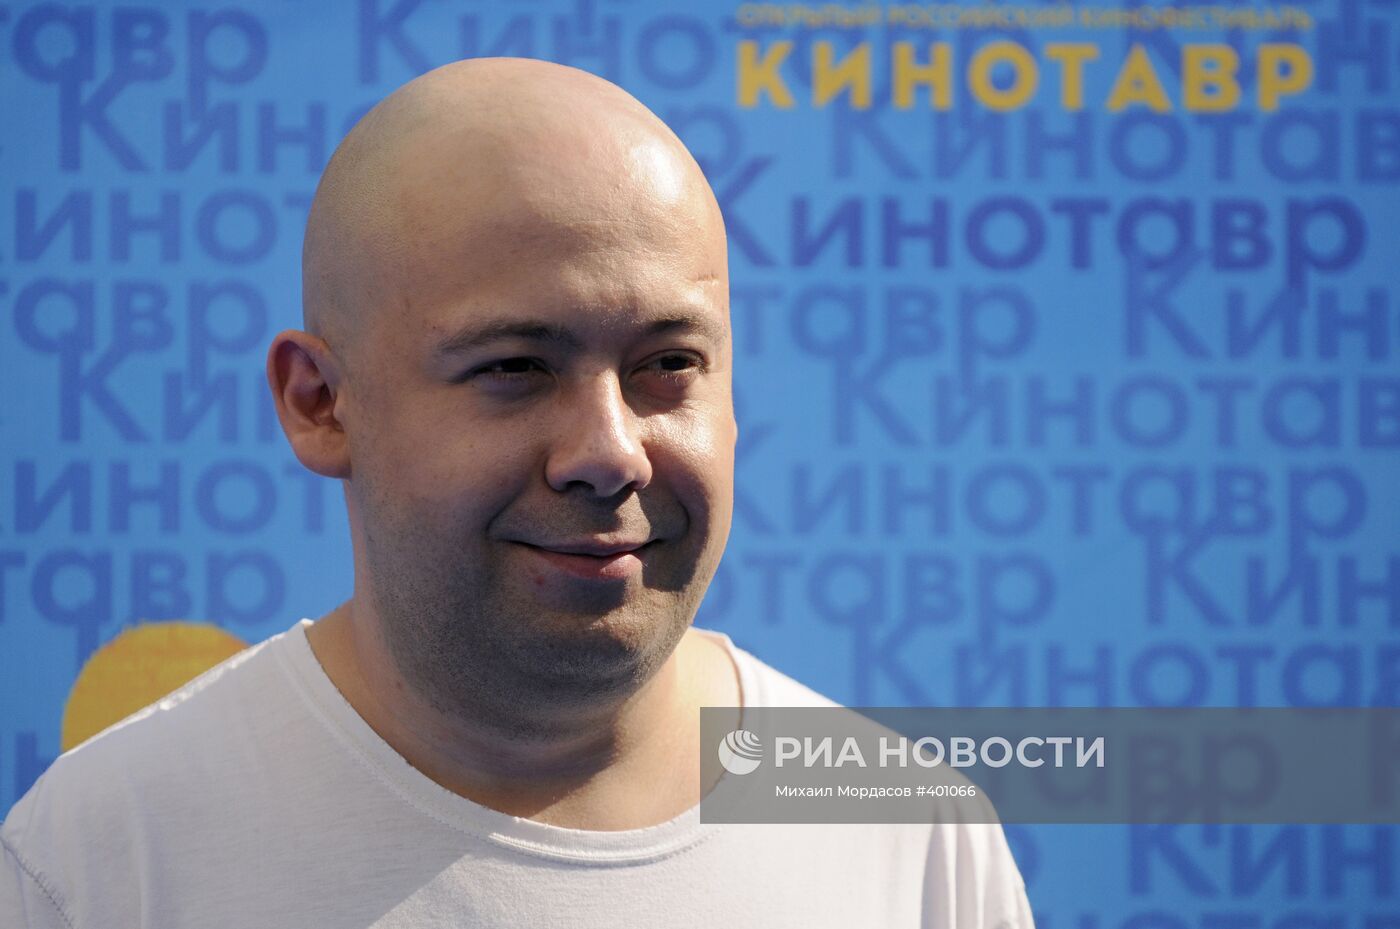 Алексей Герман на открытии кинофестиваля "Кинотавр" в Сочи